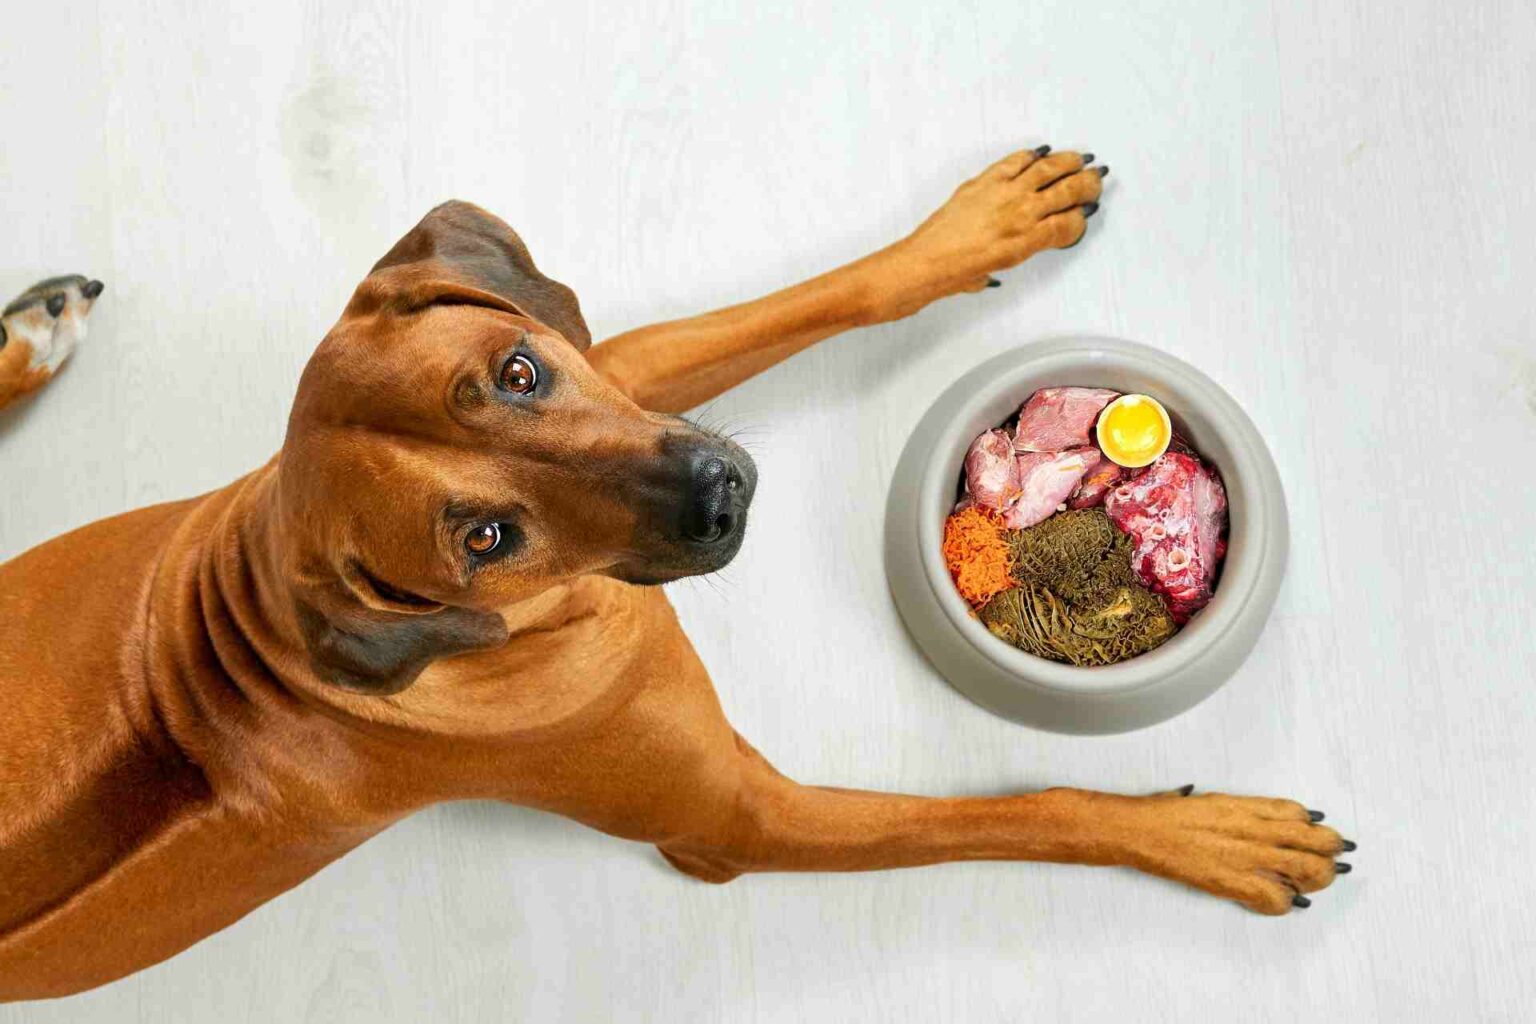 Rischio infezione da <i>Escherichia coli</i> multiresistente in cani alimentati con carne cruda